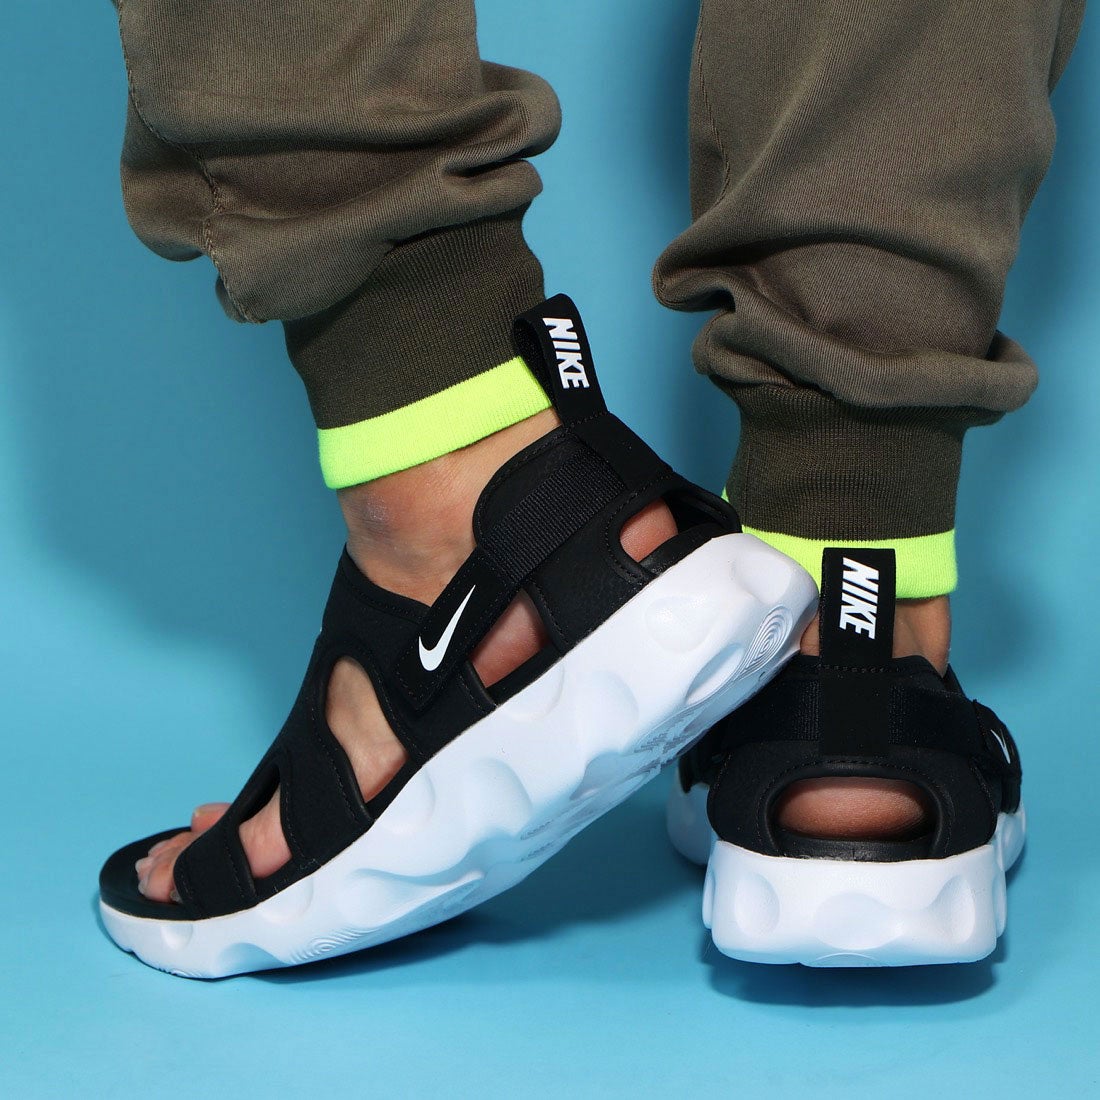 ナイキ Nike メンズ スポーツサンダル ナイキ Owaysis サンダル Ct 靴 ファッション通販 ロコンド 自宅で試着 気軽に返品